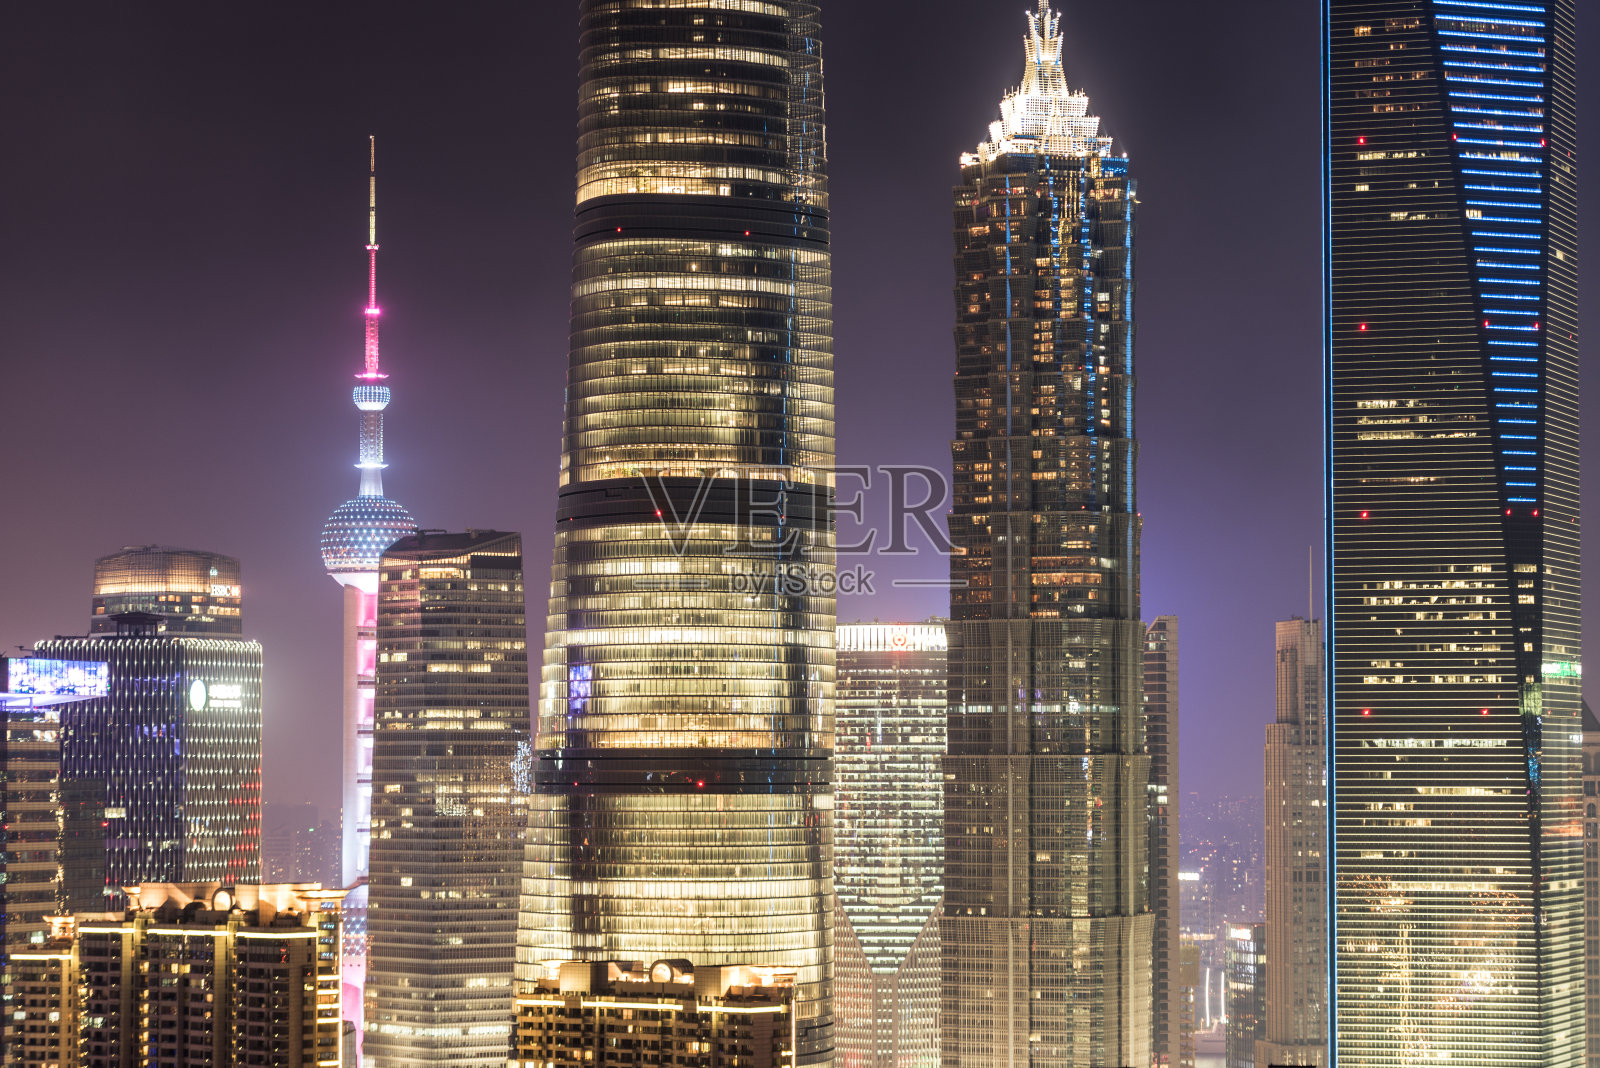 晚上照亮上海的摩天大楼照片摄影图片